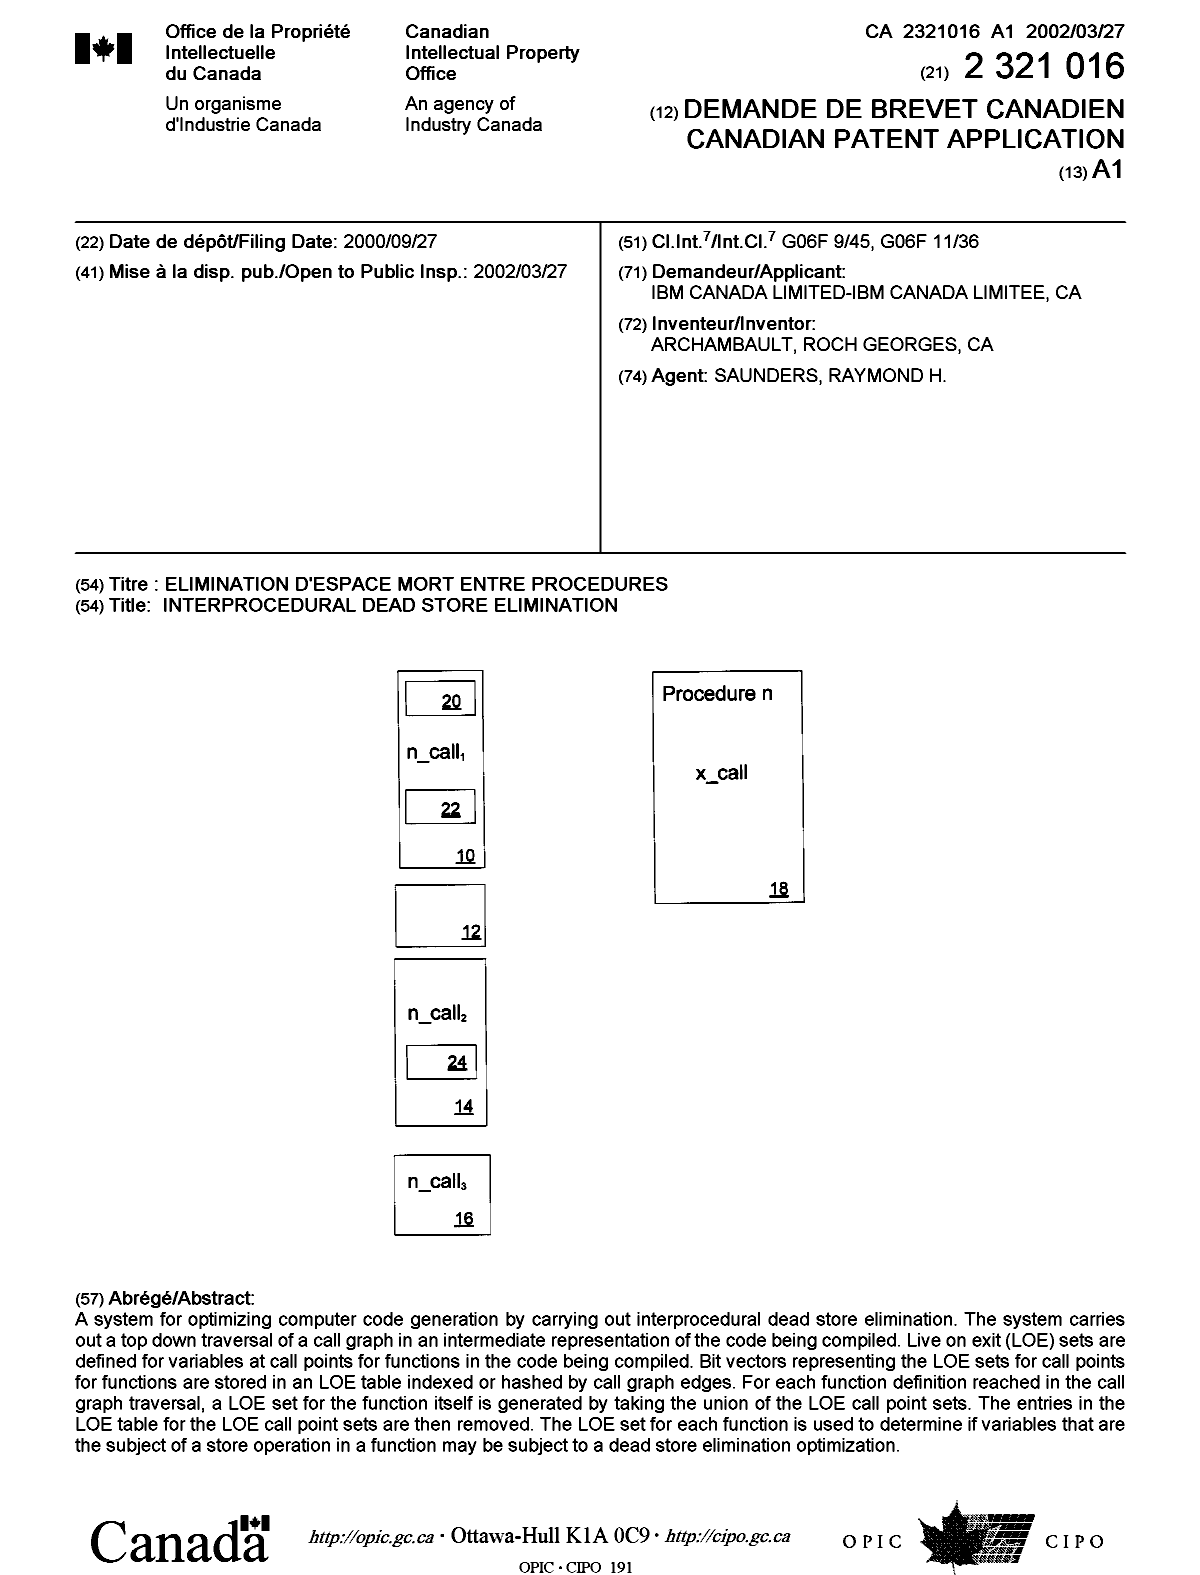 Document de brevet canadien 2321016. Page couverture 20020402. Image 1 de 1